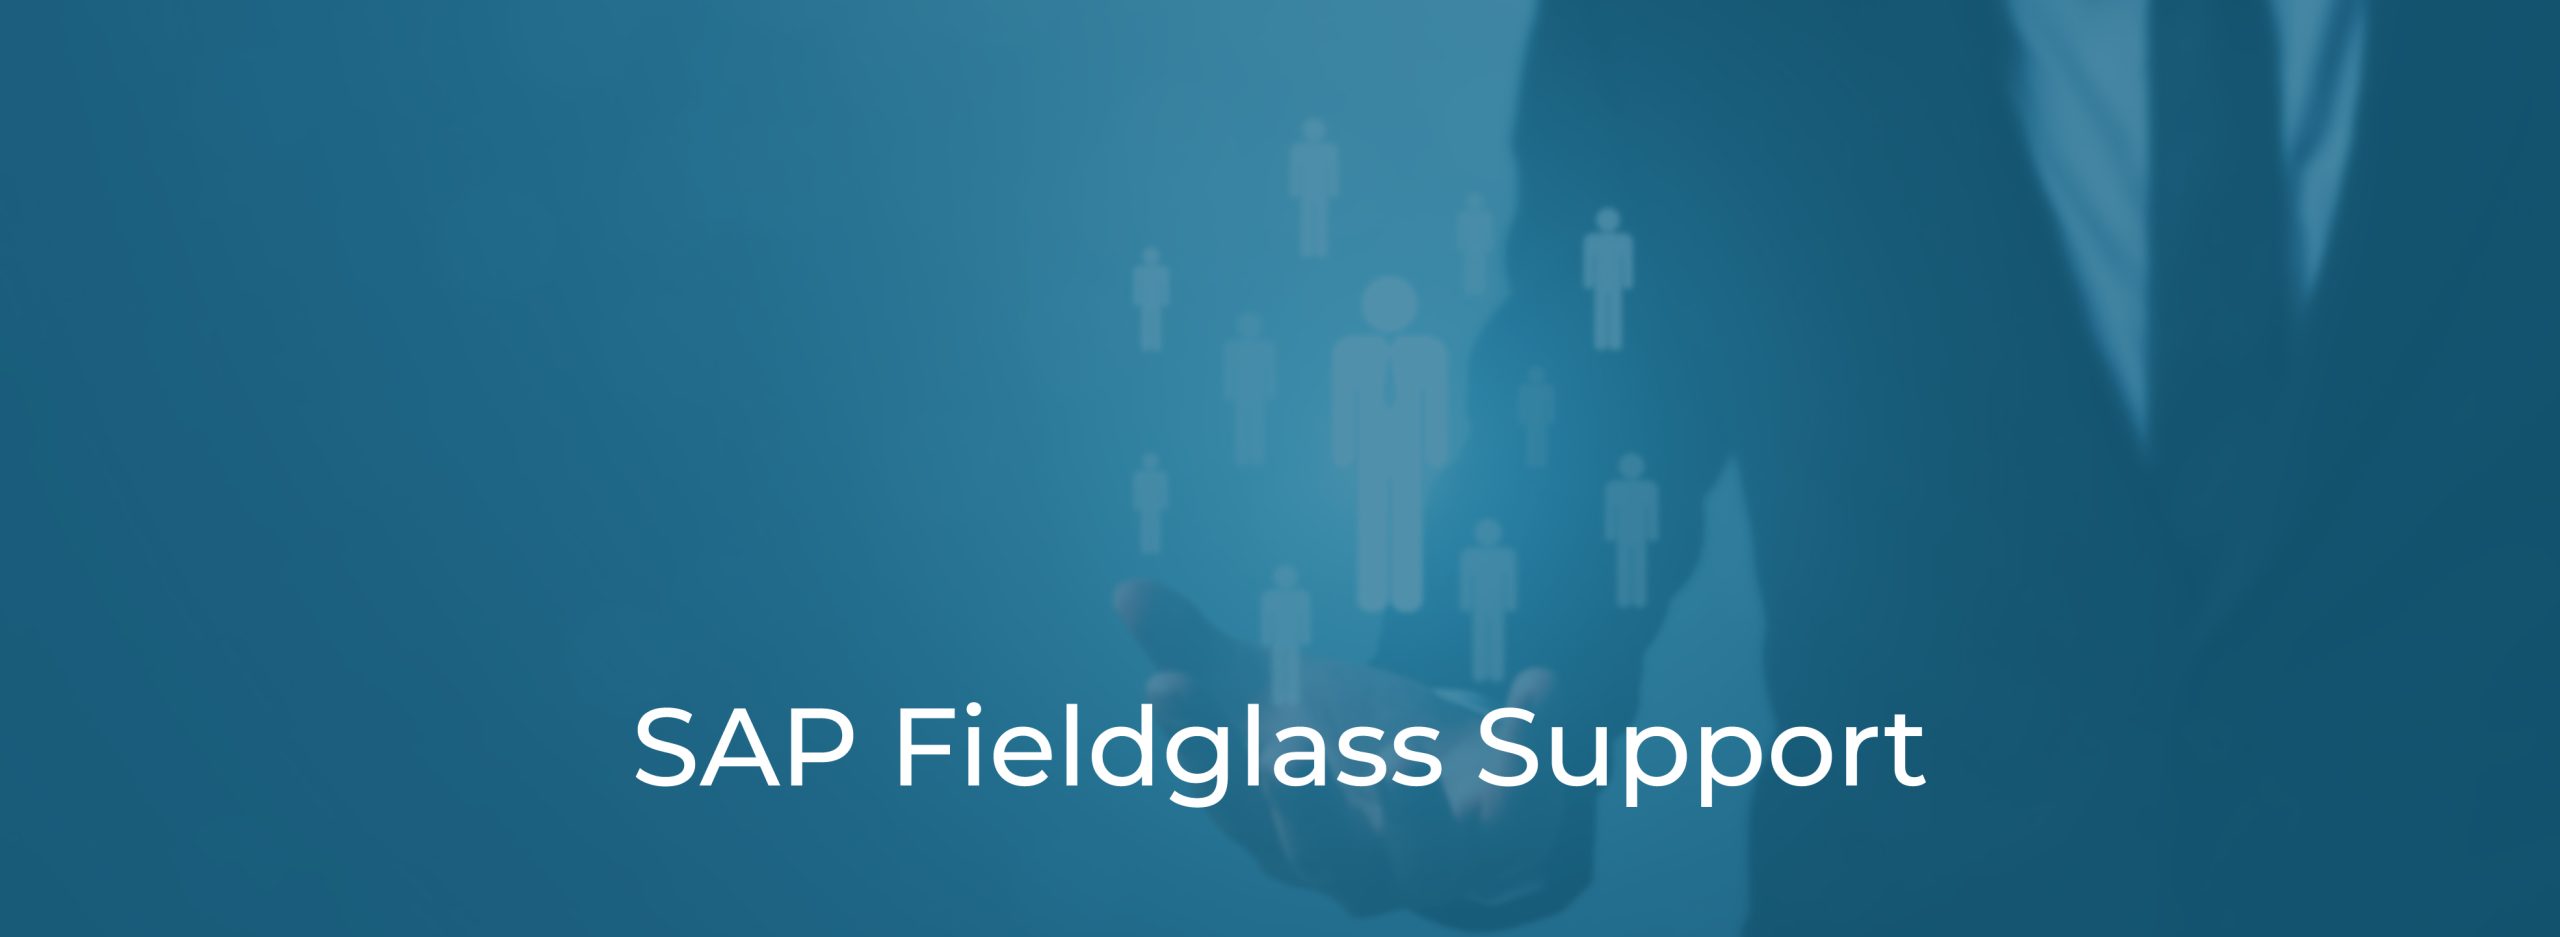 SAP Fieldglass Support